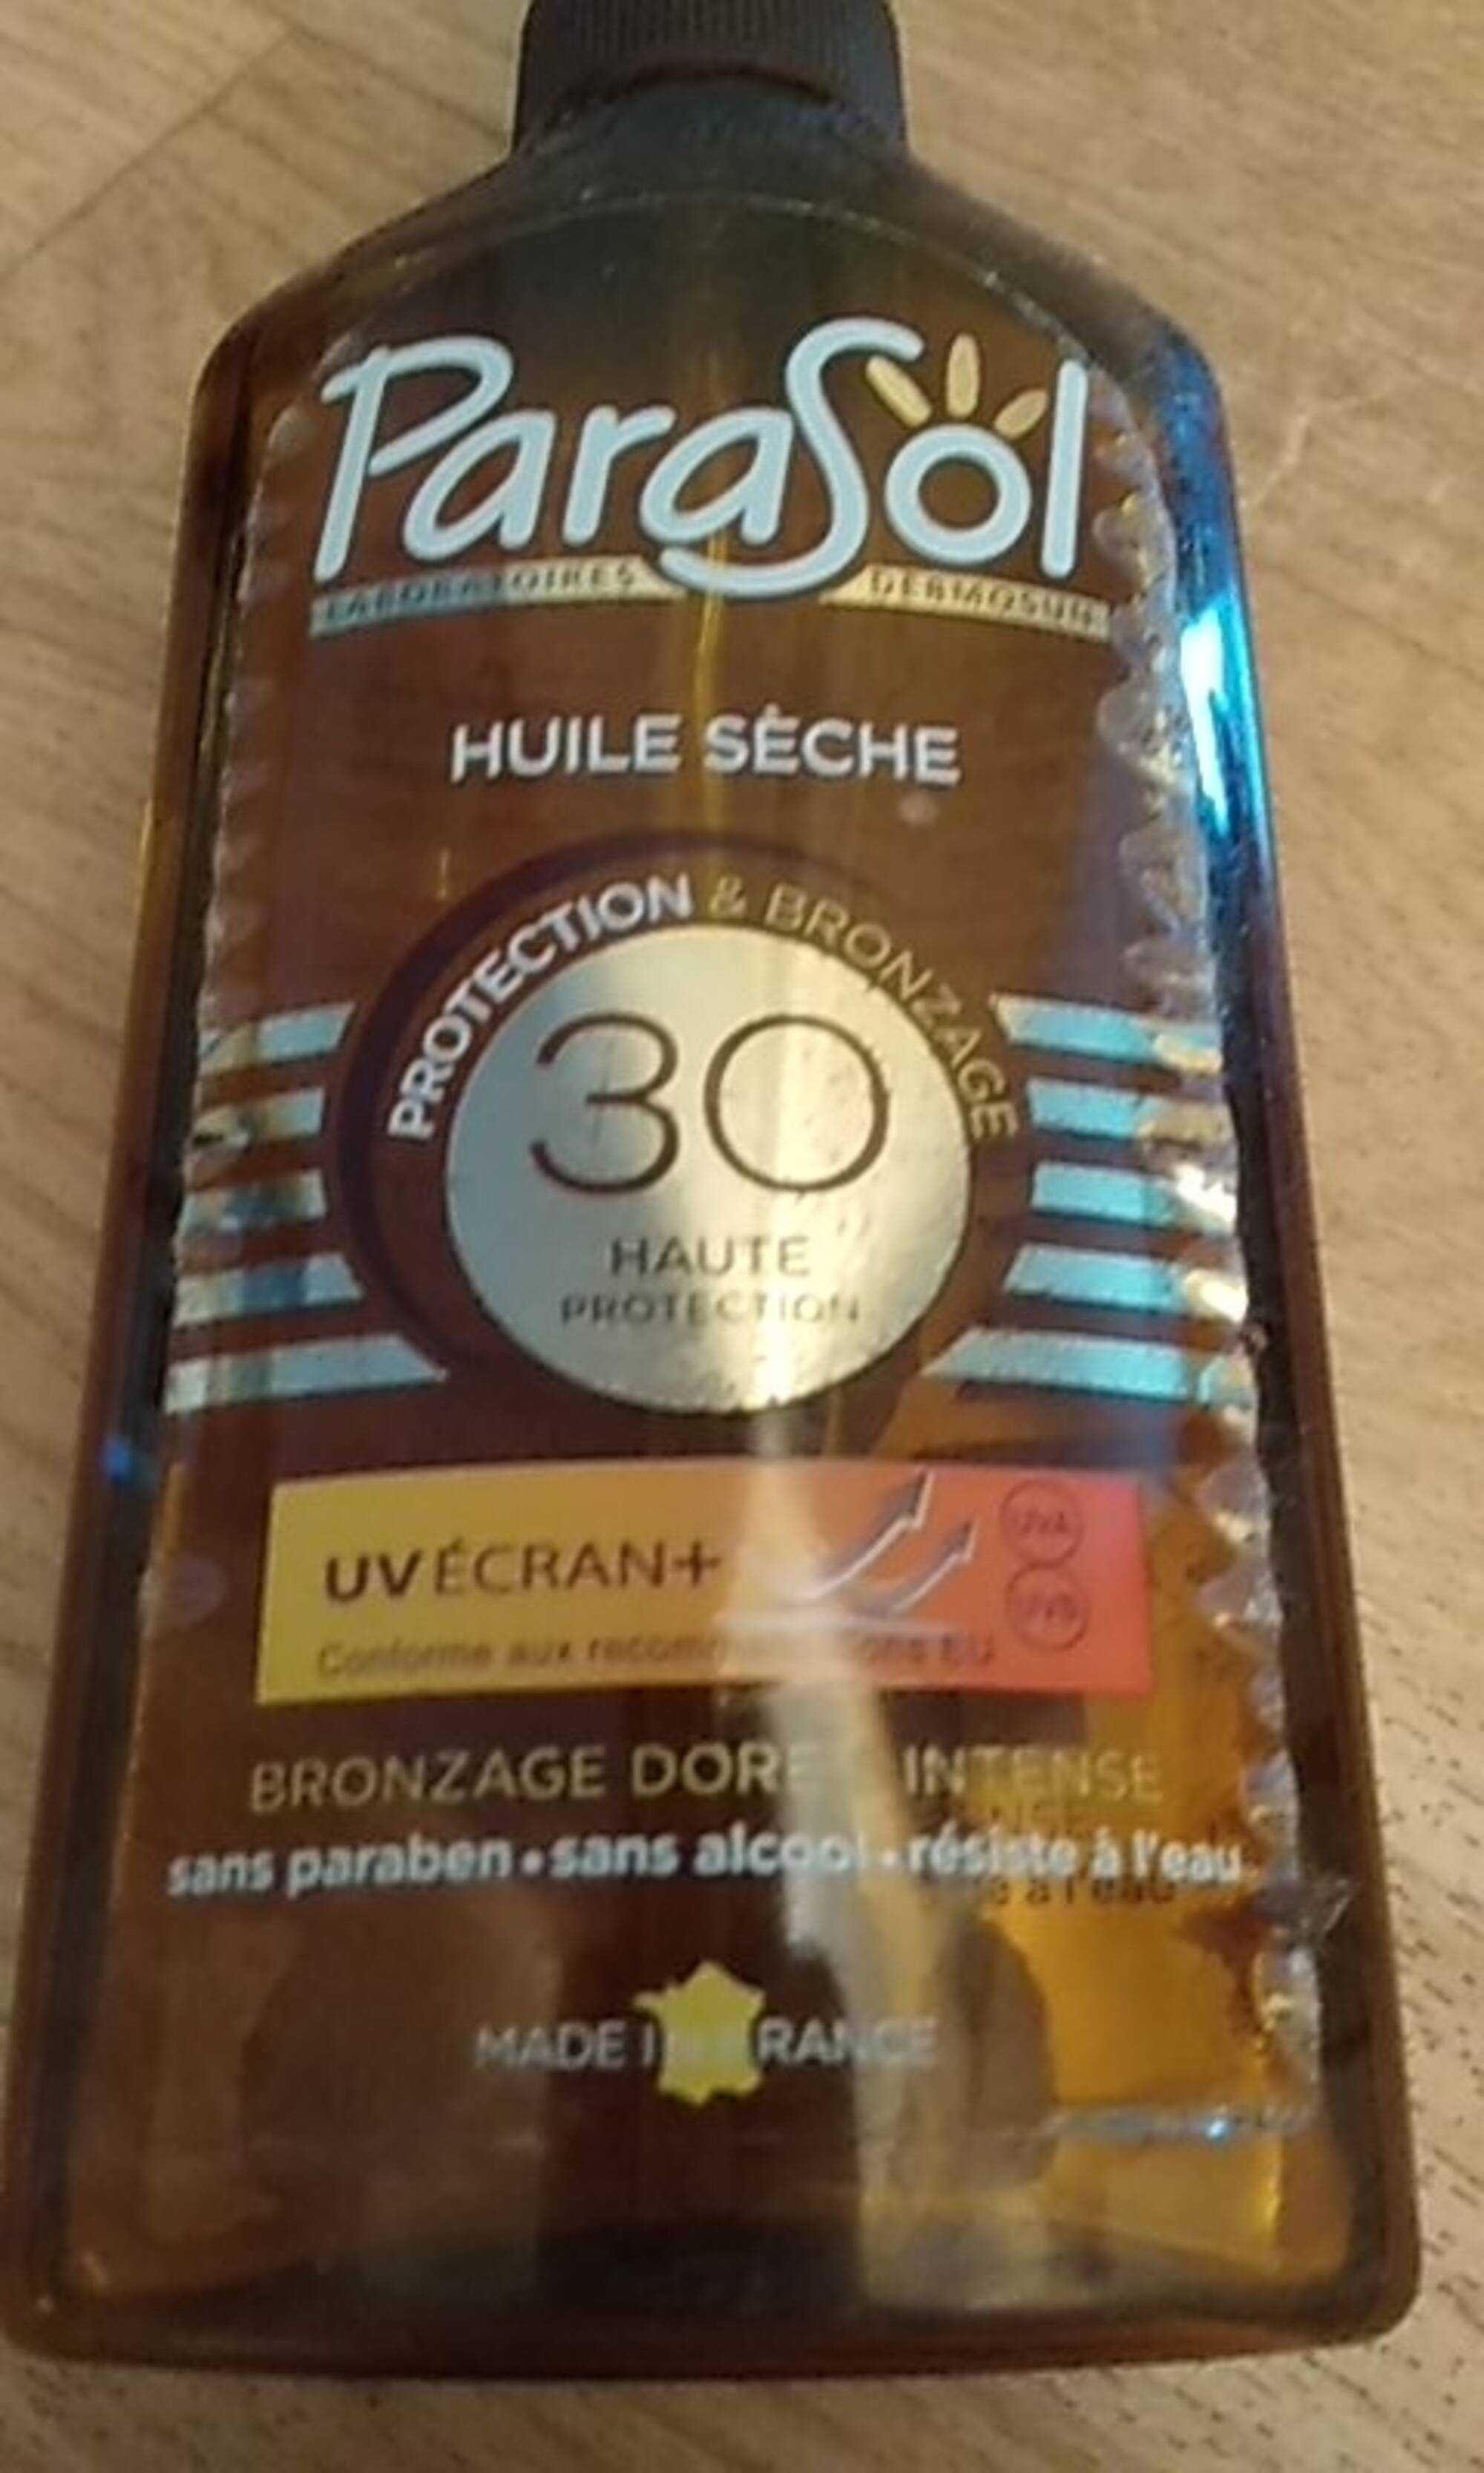 PARASOL - Huile sèche protection & bronzage 30 haute protection